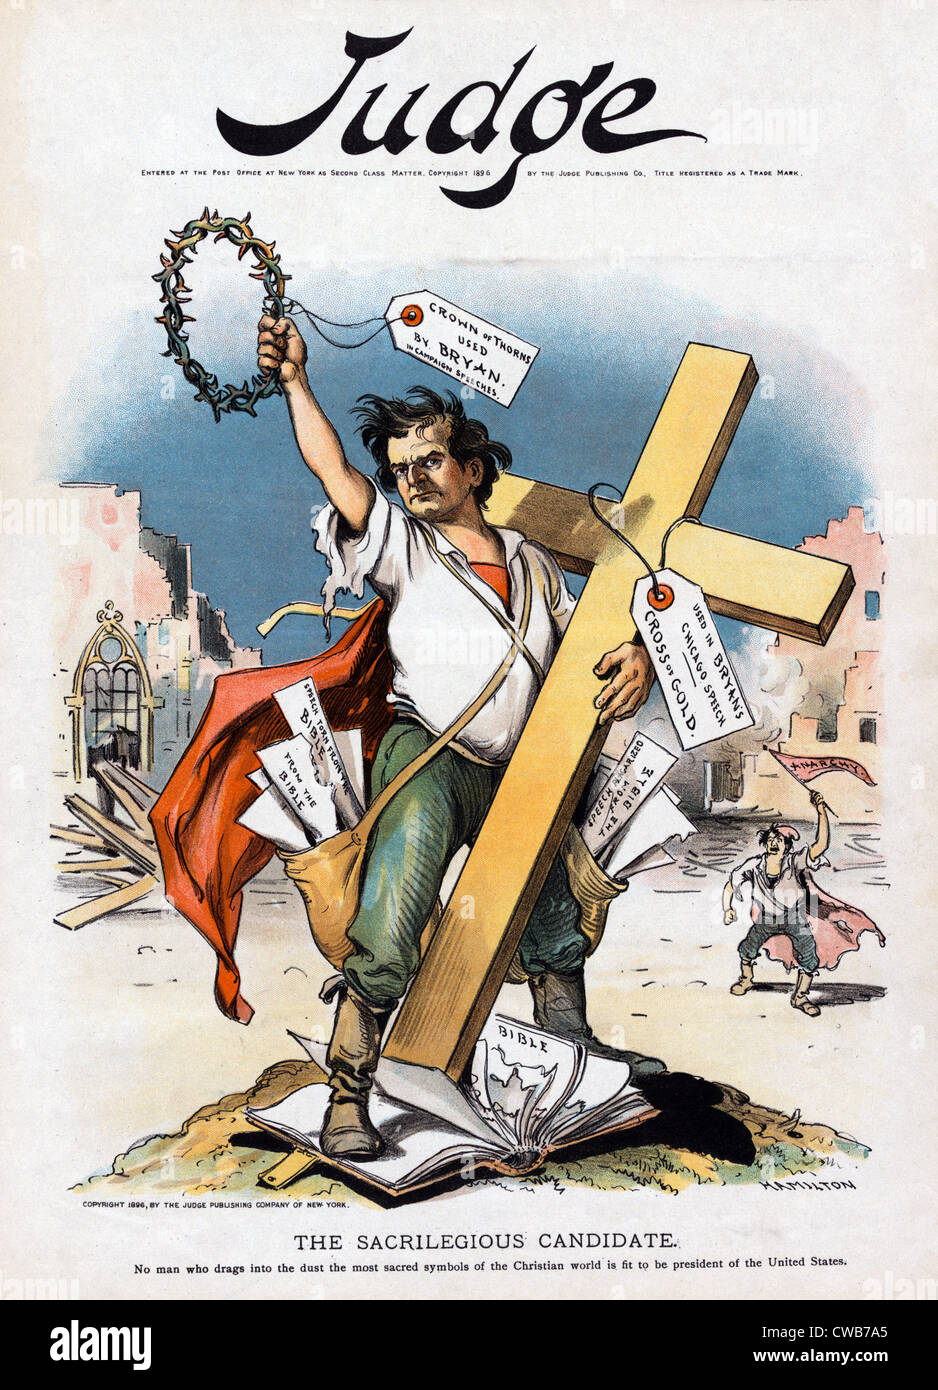 William Jennings Bryan et la croix d'or. Le candidat "sacrilège", lithographie couleur couverture Magazine, Septembre 1896 Banque D'Images